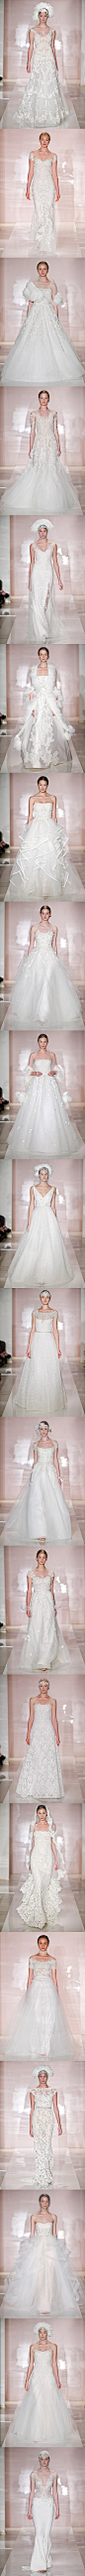 #婚纱礼服#Reem Acra2014年秋冬系列婚纱用羽毛的轻盈之美，为各位新娘带来了纯白色的世界。 更多: http://www.lovewith.me/share/detail/all/29548